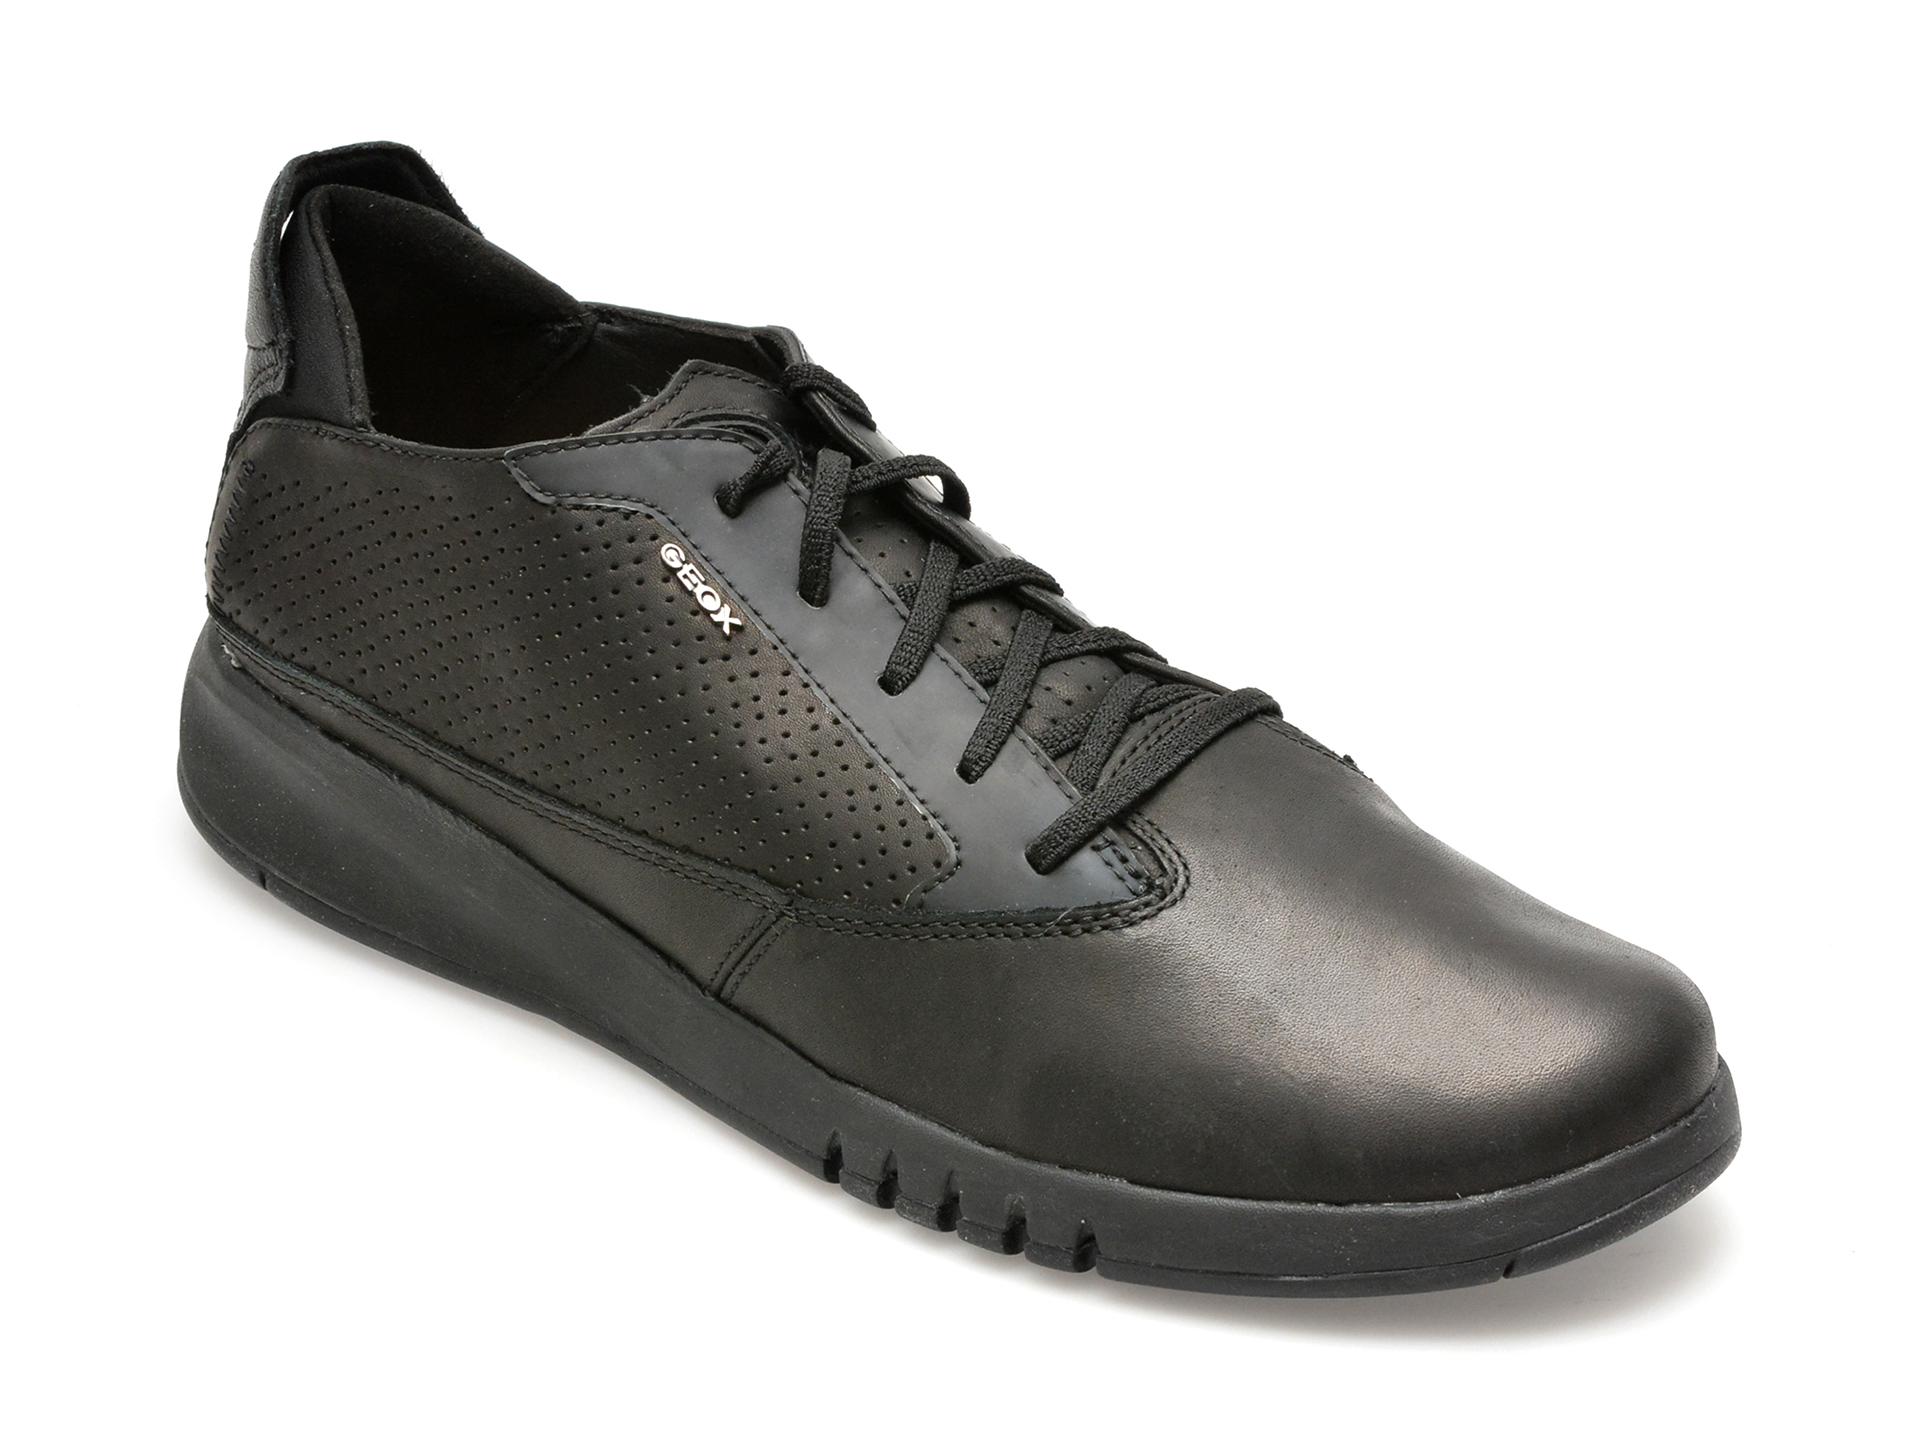 Pantofi GEOX negri, U927FA, din piele naturala